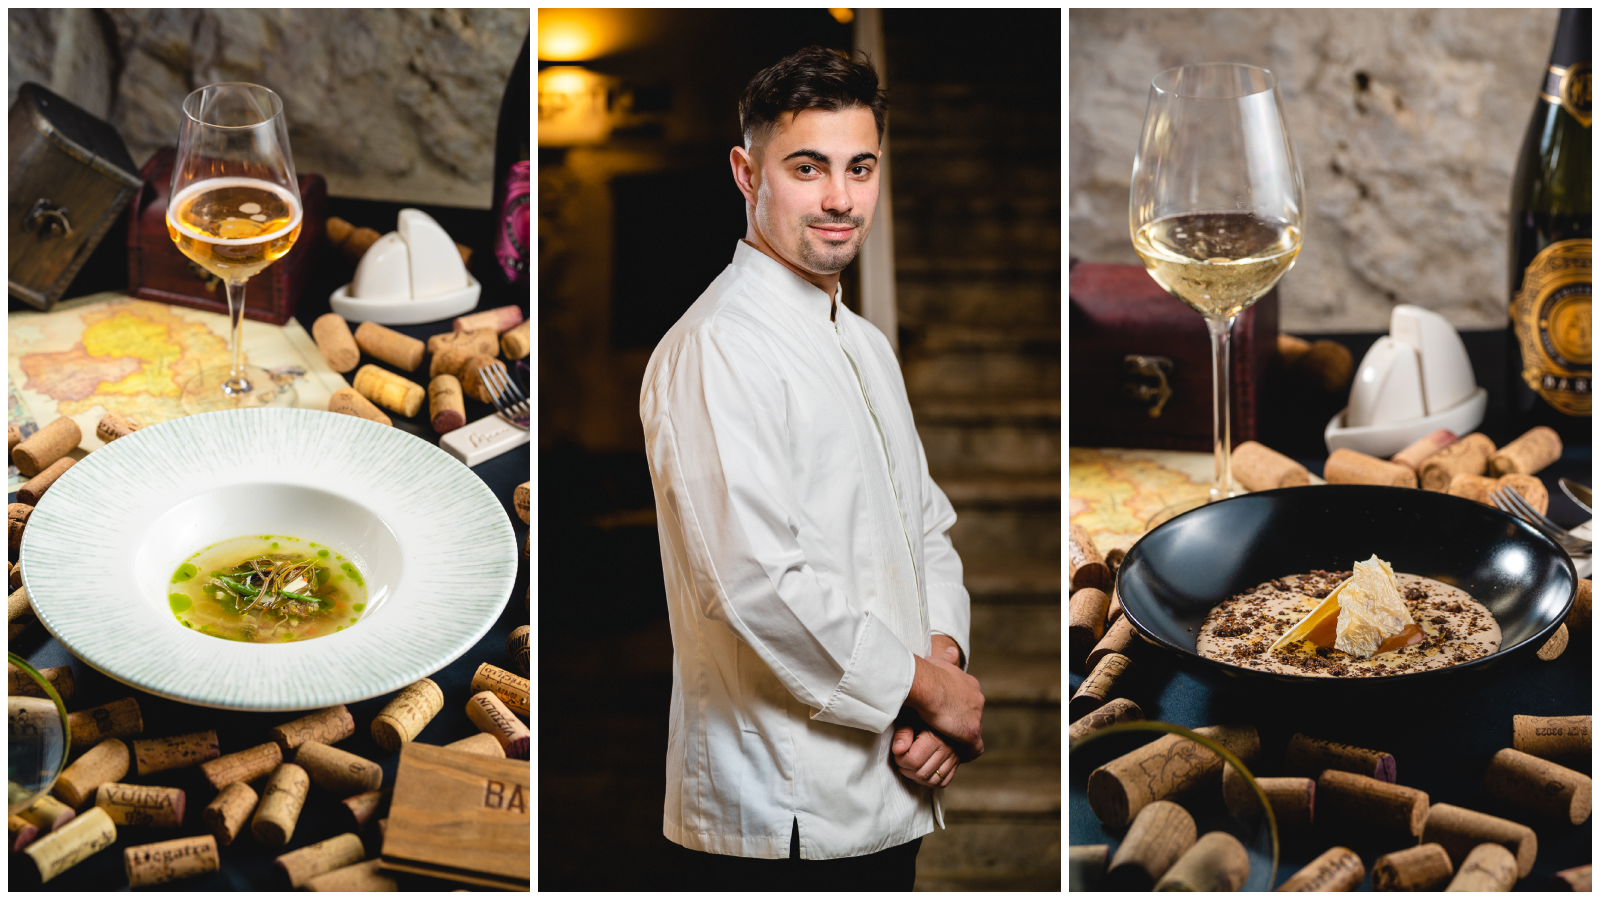 Mladi i talentirani chef Roko Nikolić je u trogirskom restoranu Mare priredio večeru za pamćenje